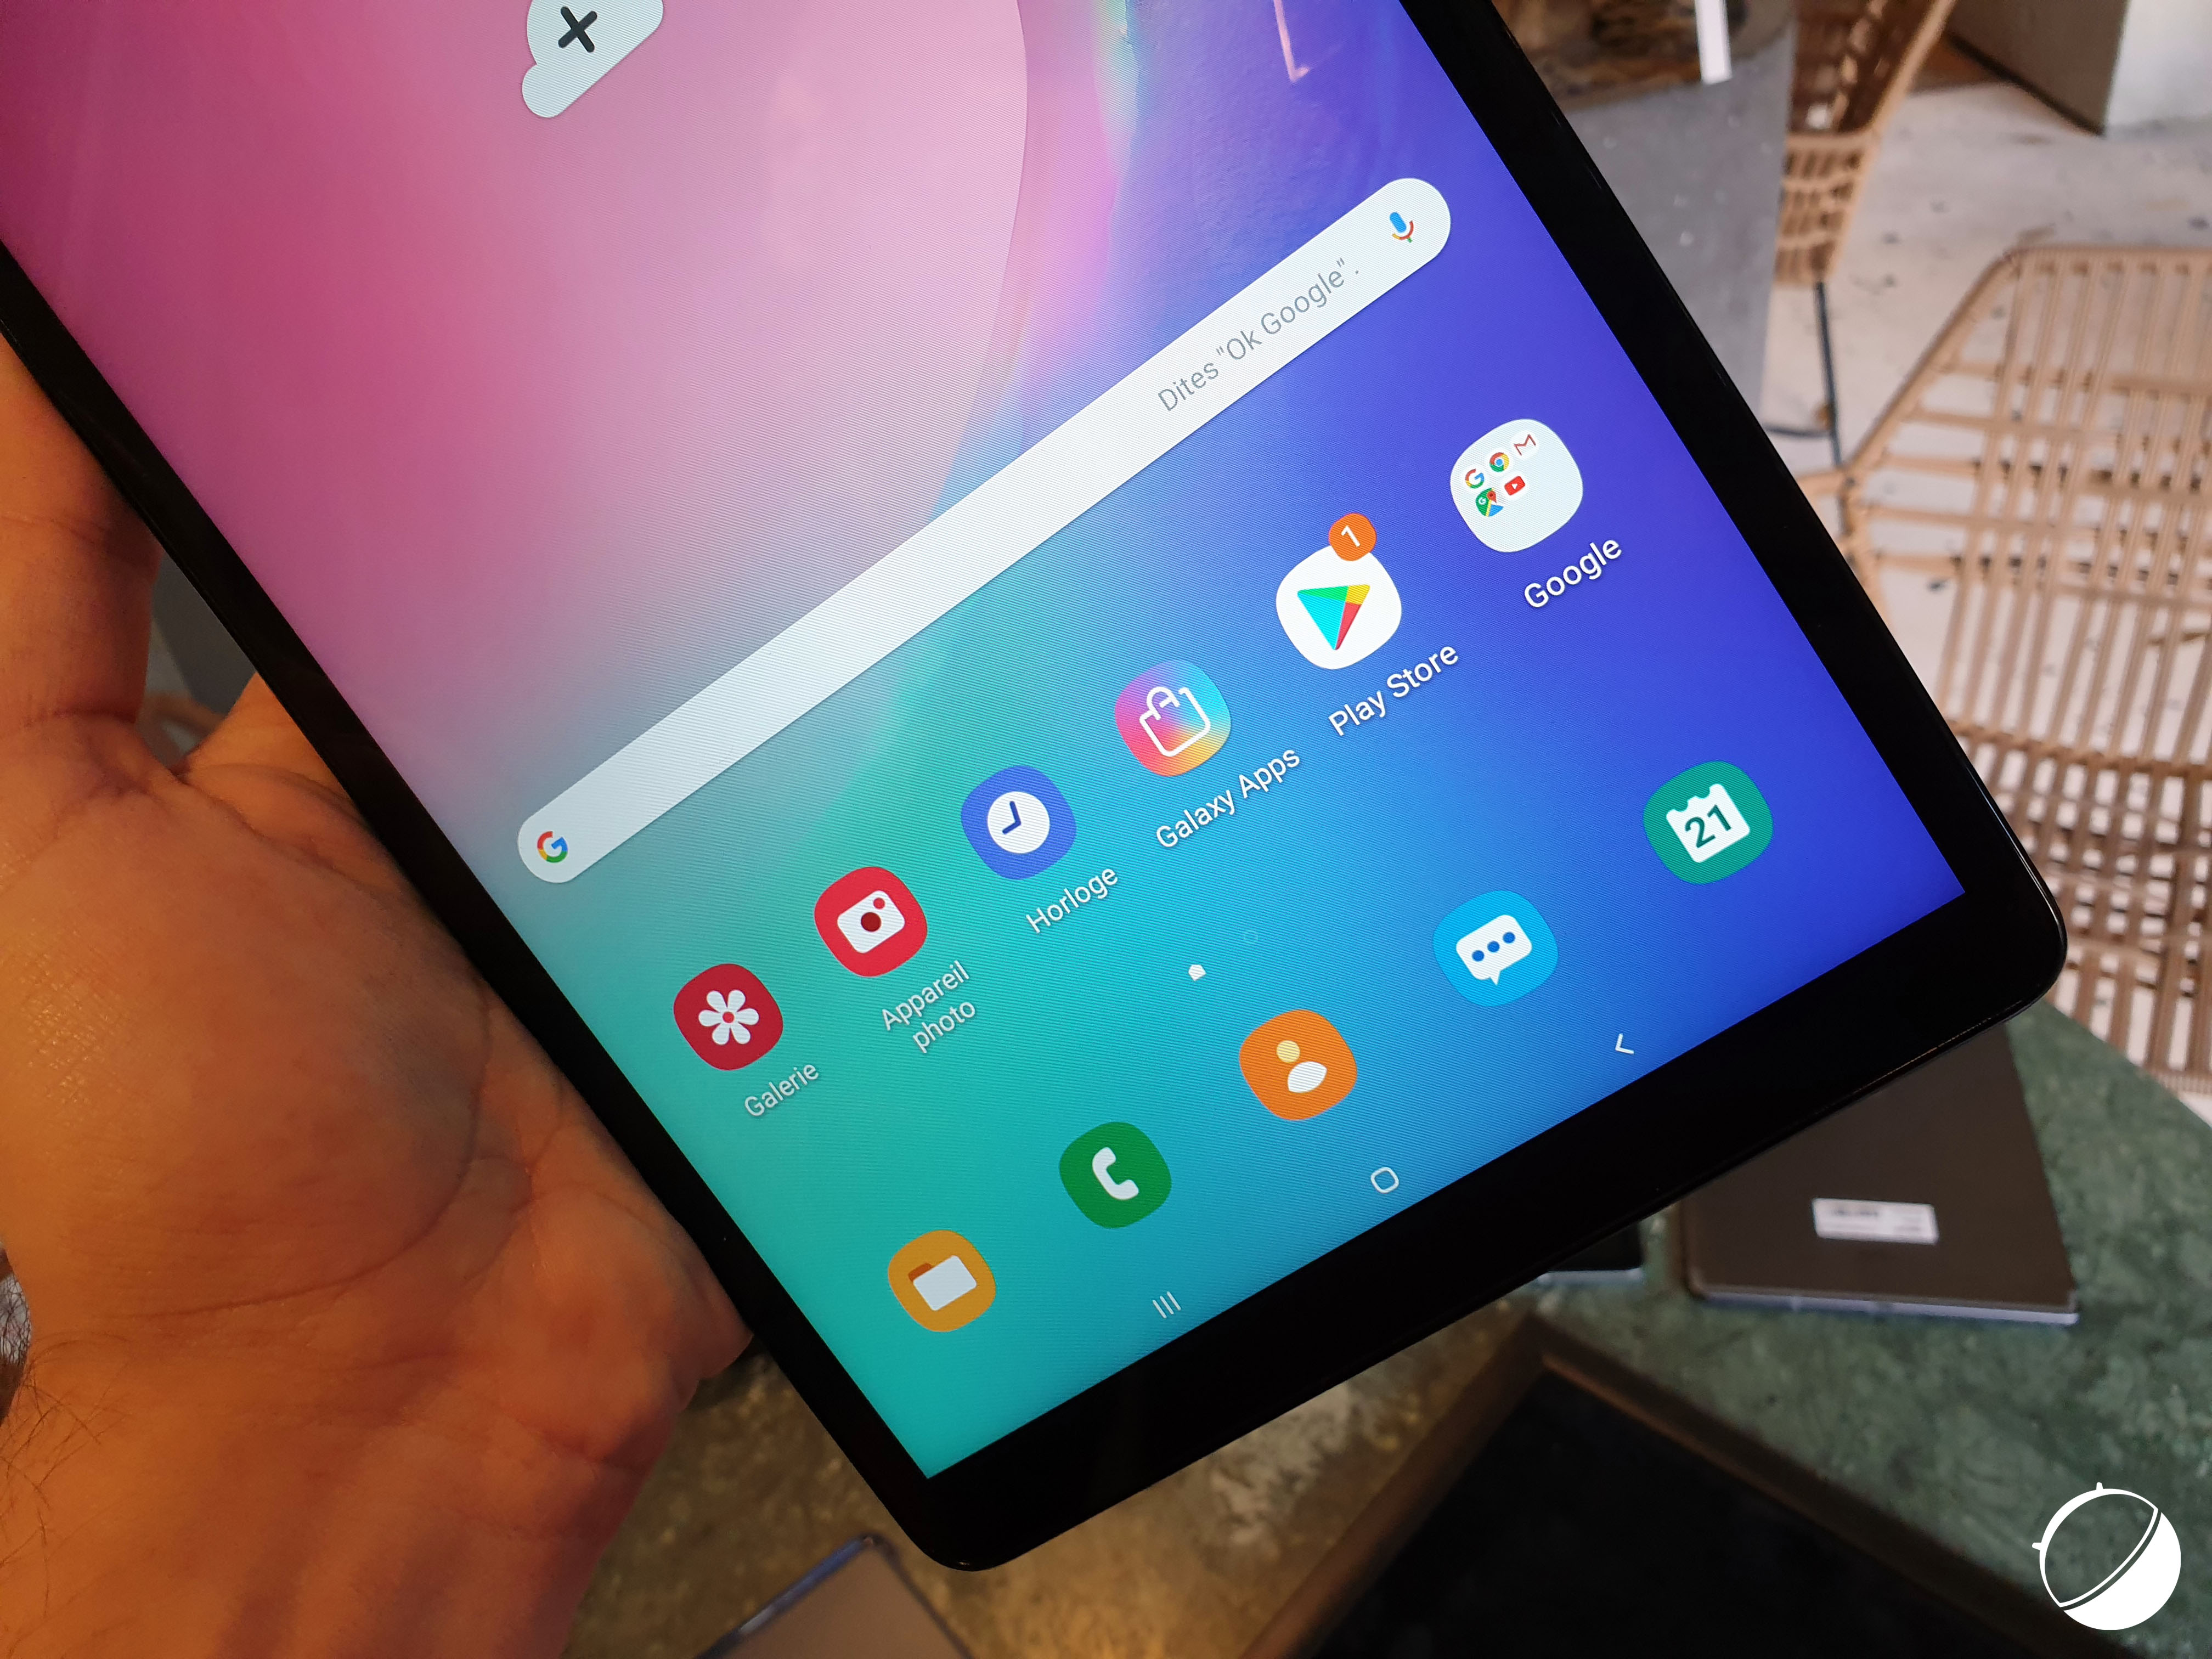 Samsung Galaxy Tab A (2019) : prix, disponibilité et nos photos de la tablette milieu de gamme